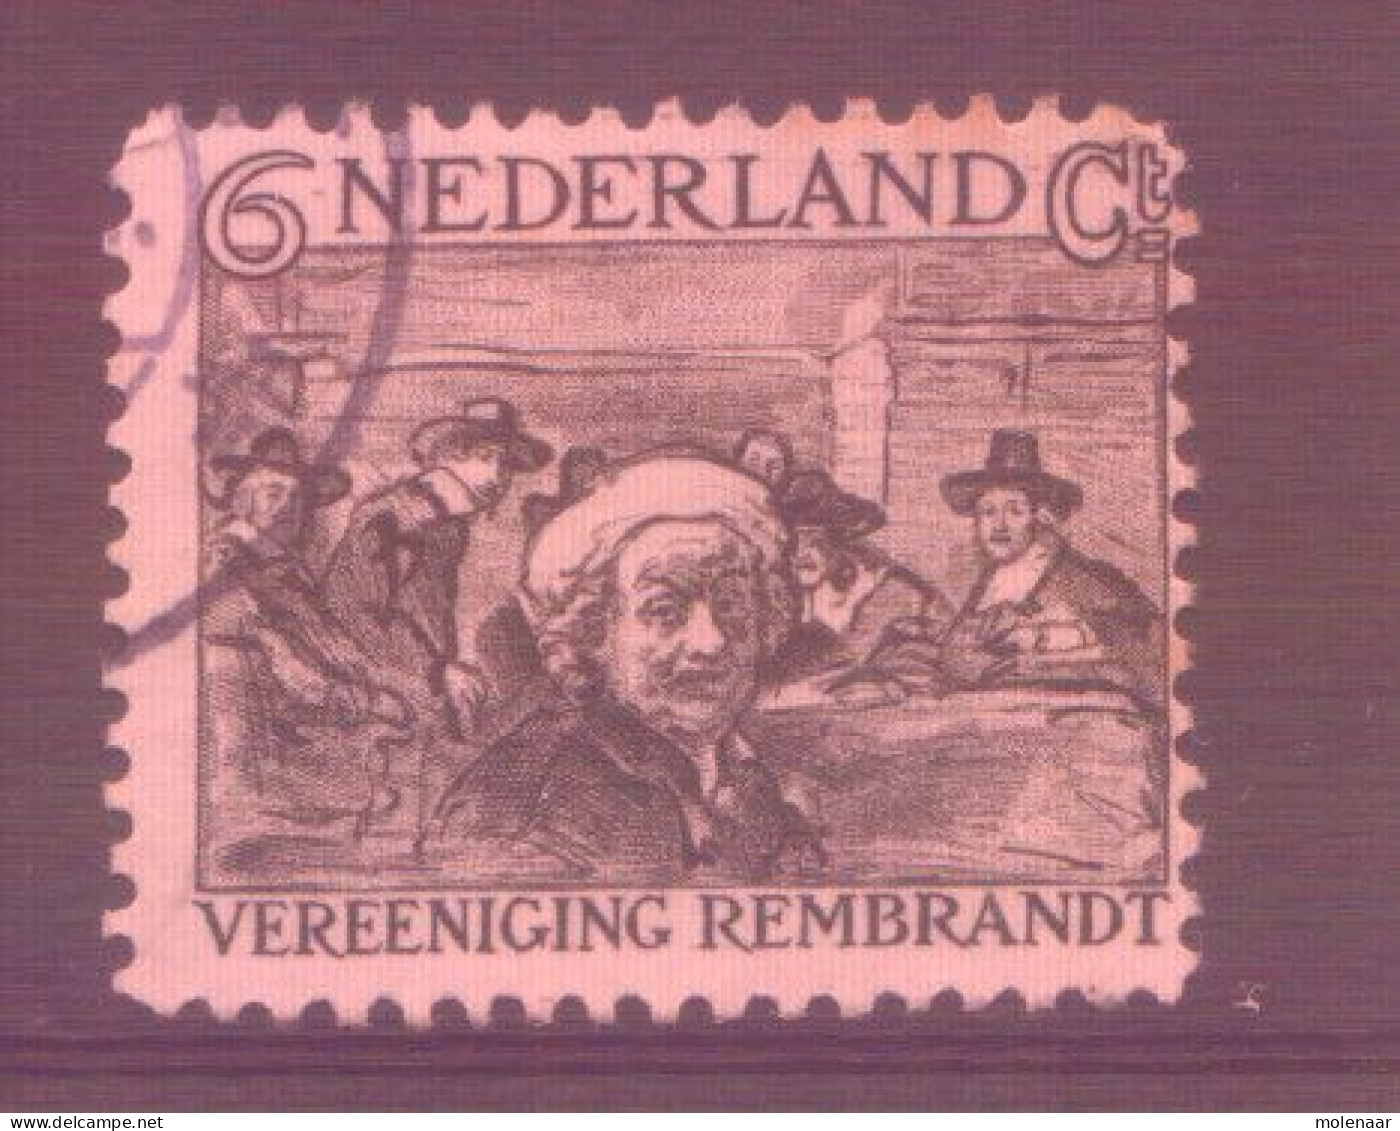 Postzegels > Europa > Nederland > Periode 1891-1948 (Wilhelmina) > 1891-1909 > 230 Gebruikt (11762) - Gebruikt